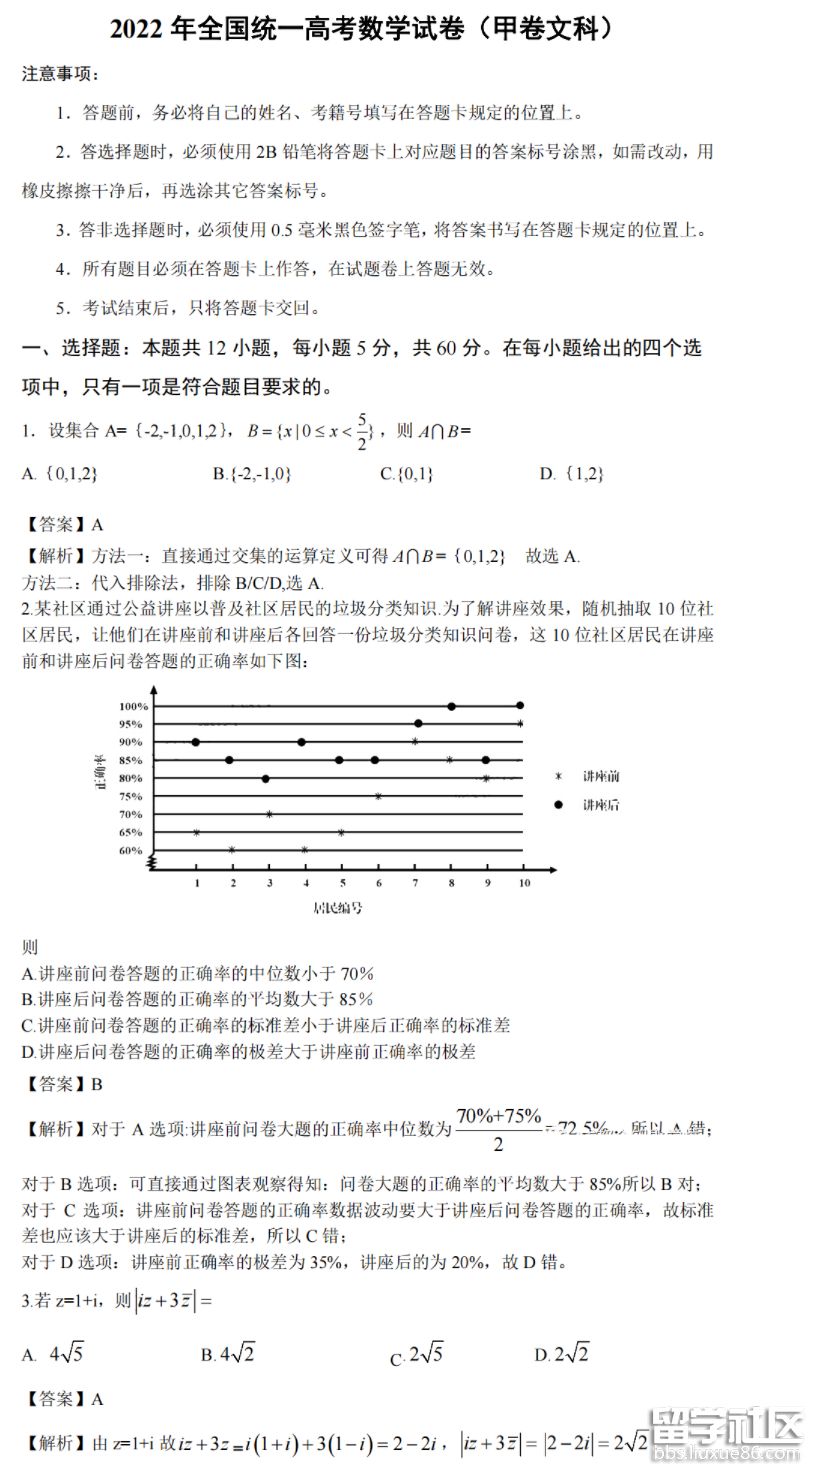 2022年四川高考文科數學試卷及答案圖片版